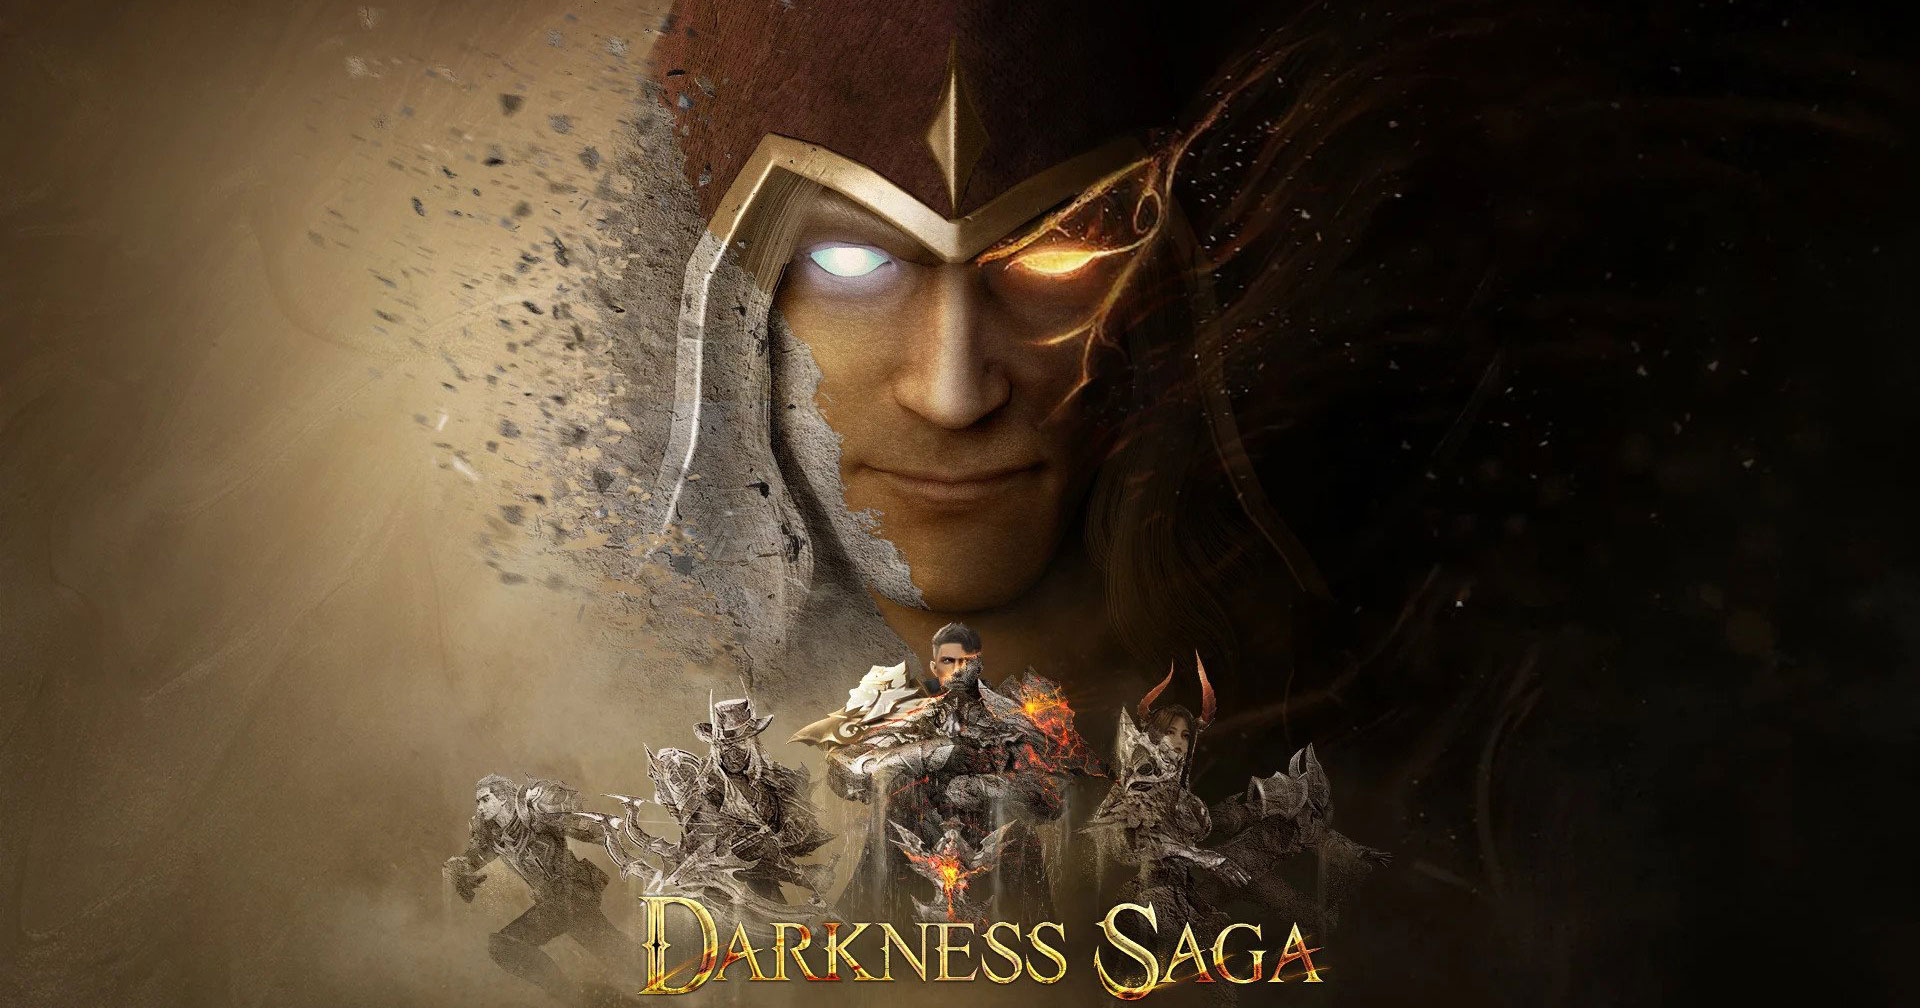 Siêu phẩm game nhập vai Darkness Saga đã mở đăng kí sớm với nhiều phần quà hấp dẫn